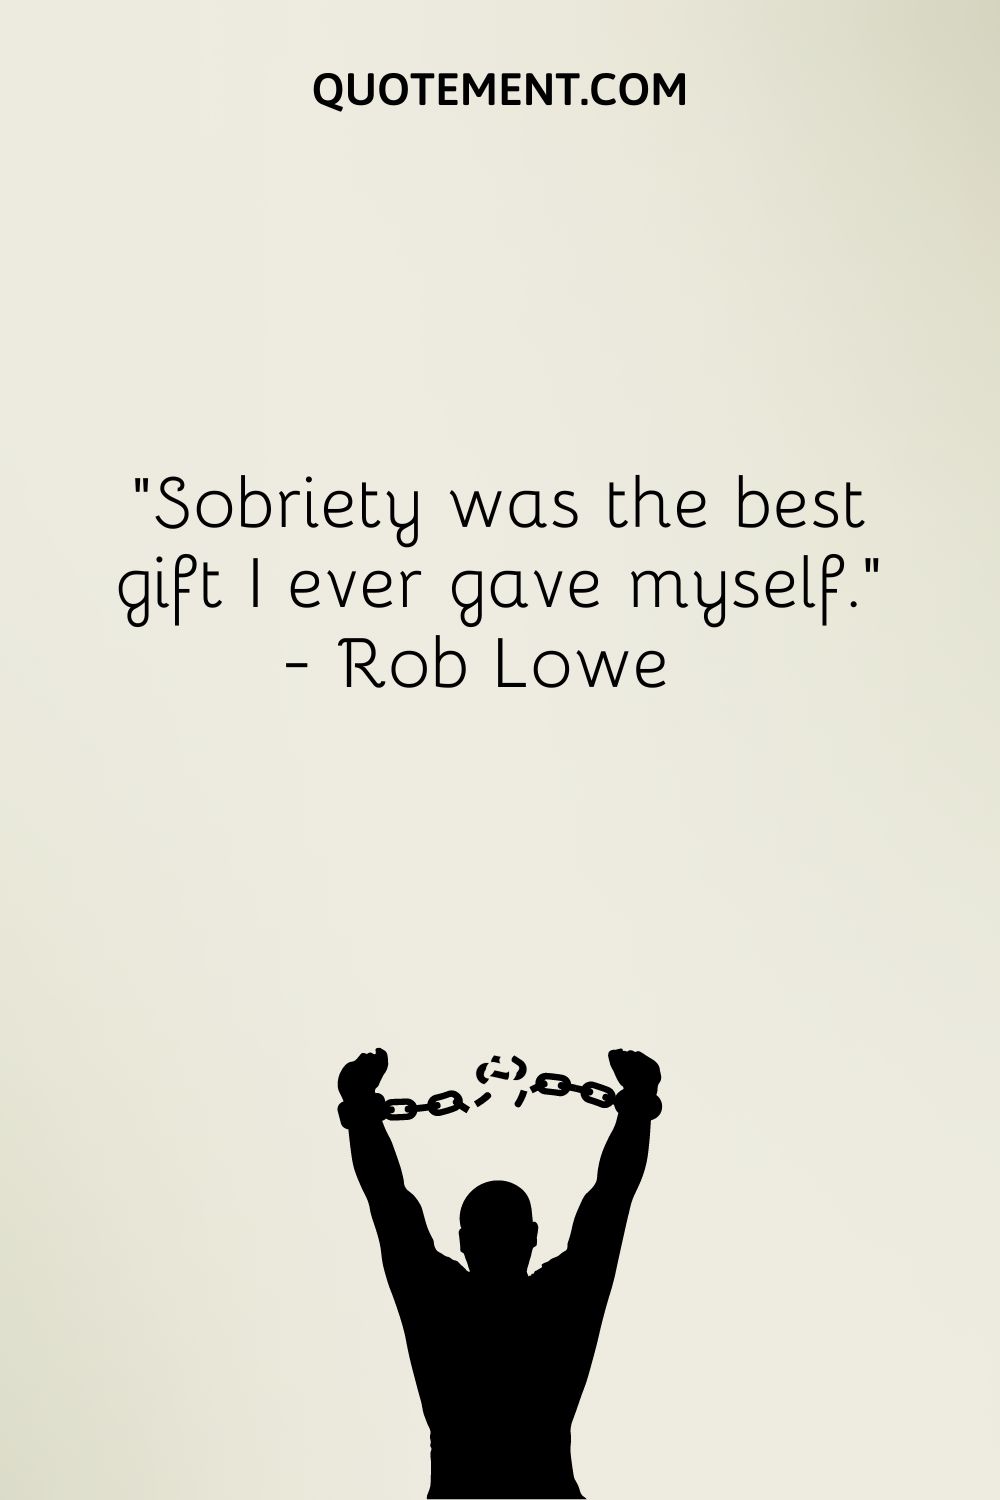 La sobriedad ha sido el mejor regalo que me he hecho nunca